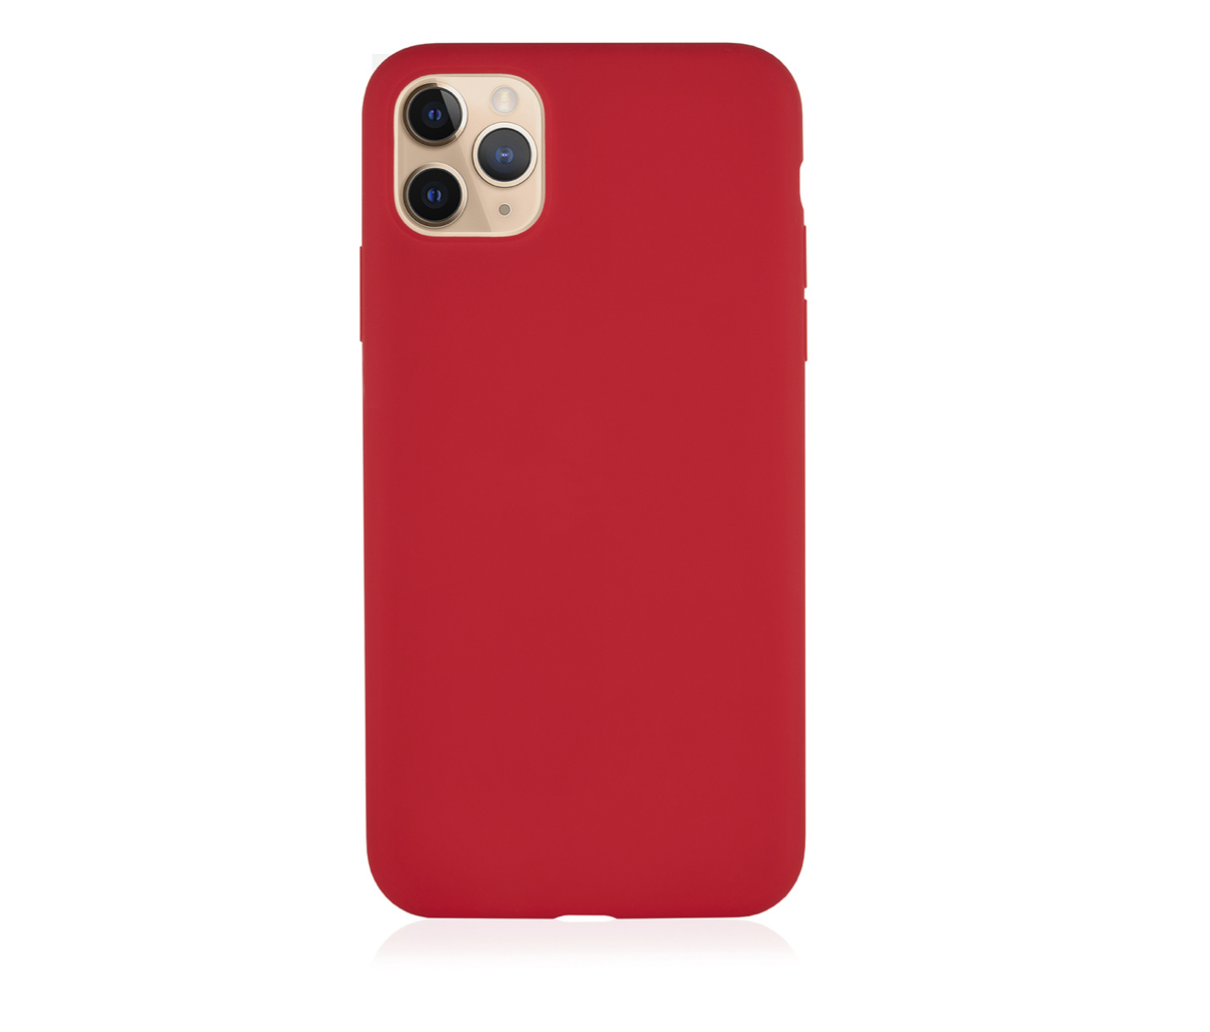 Чехол защитный VLP Silicone Сase для iPhone 11 Pro Max, красный